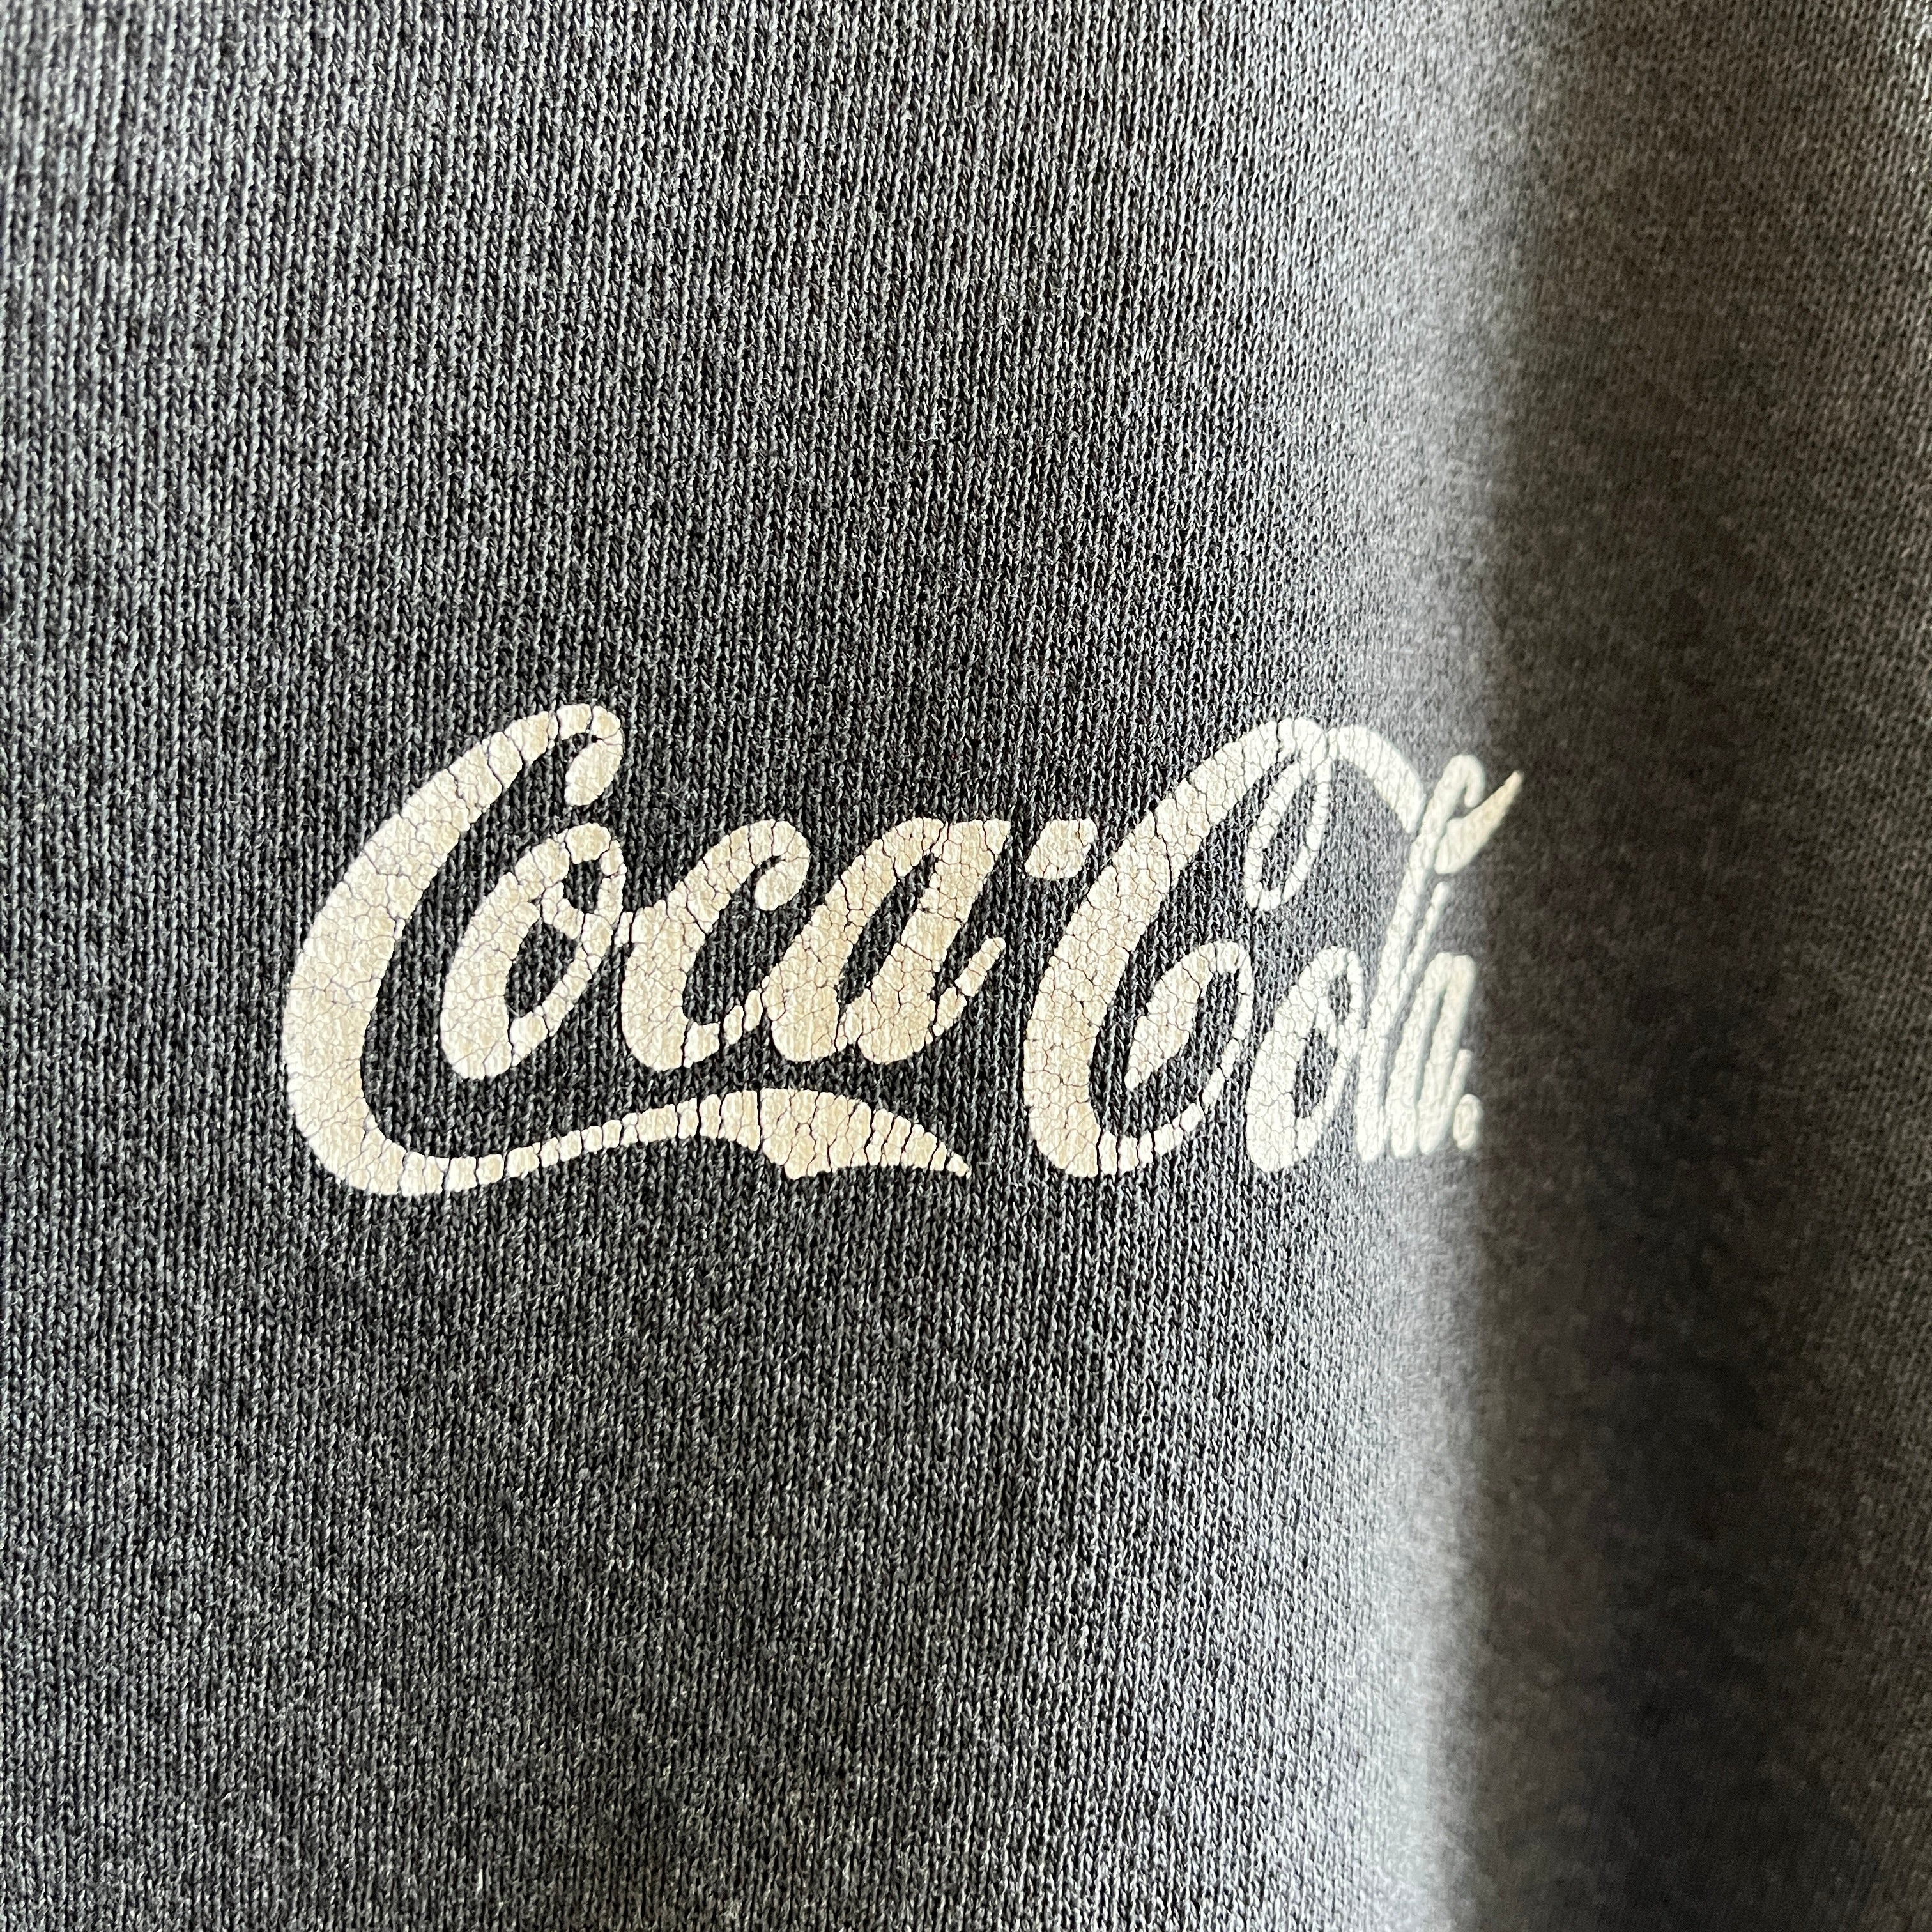 1990s Coca-Cola Faded Black/Gray Sweatshirt by Lee